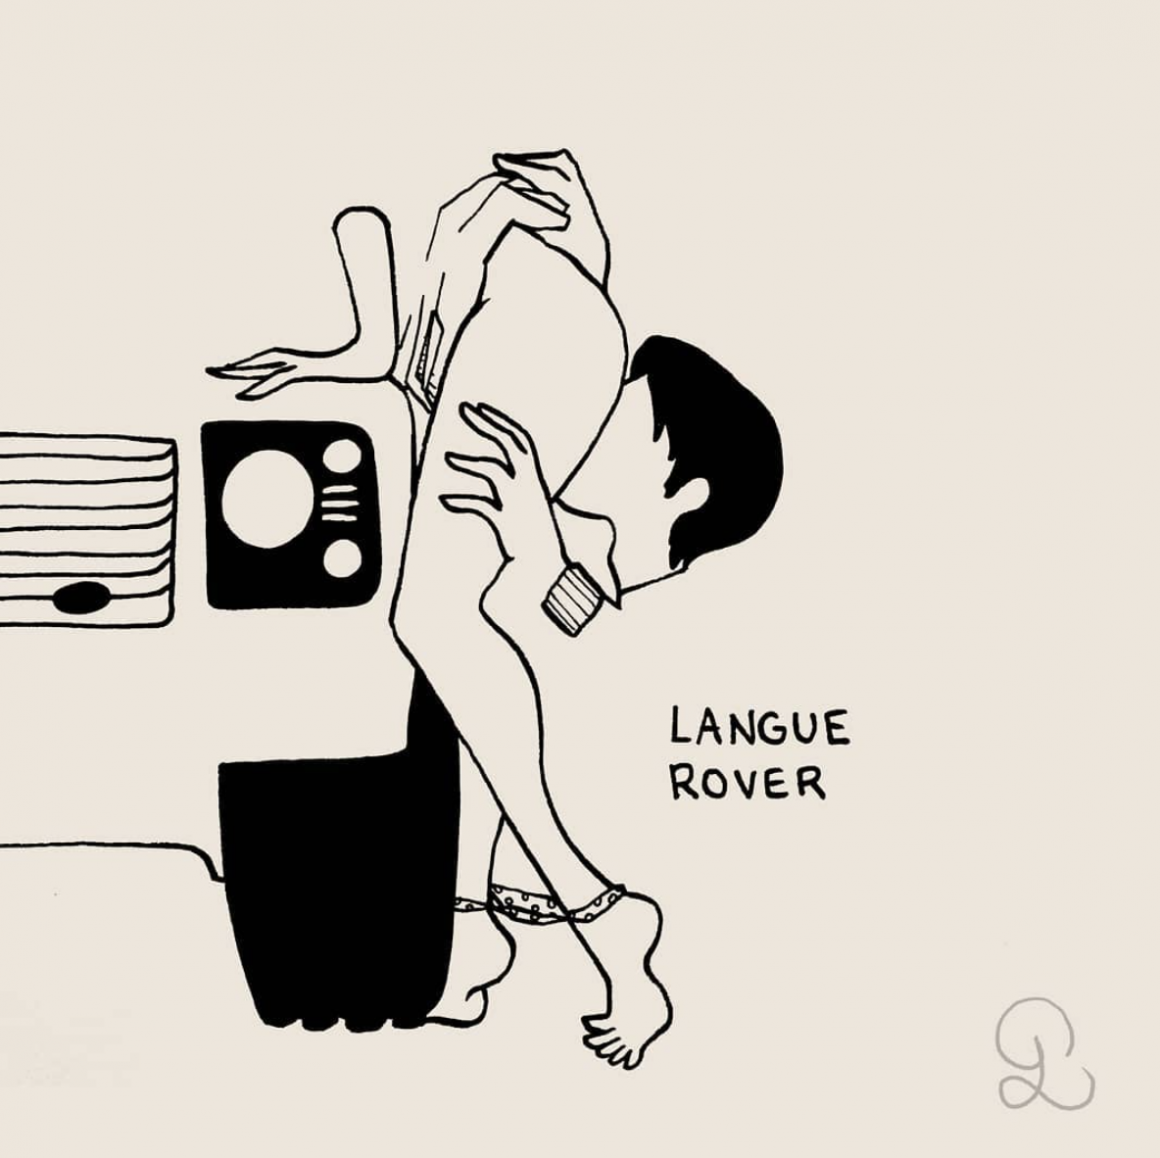 Langue rover par Petites Luxures